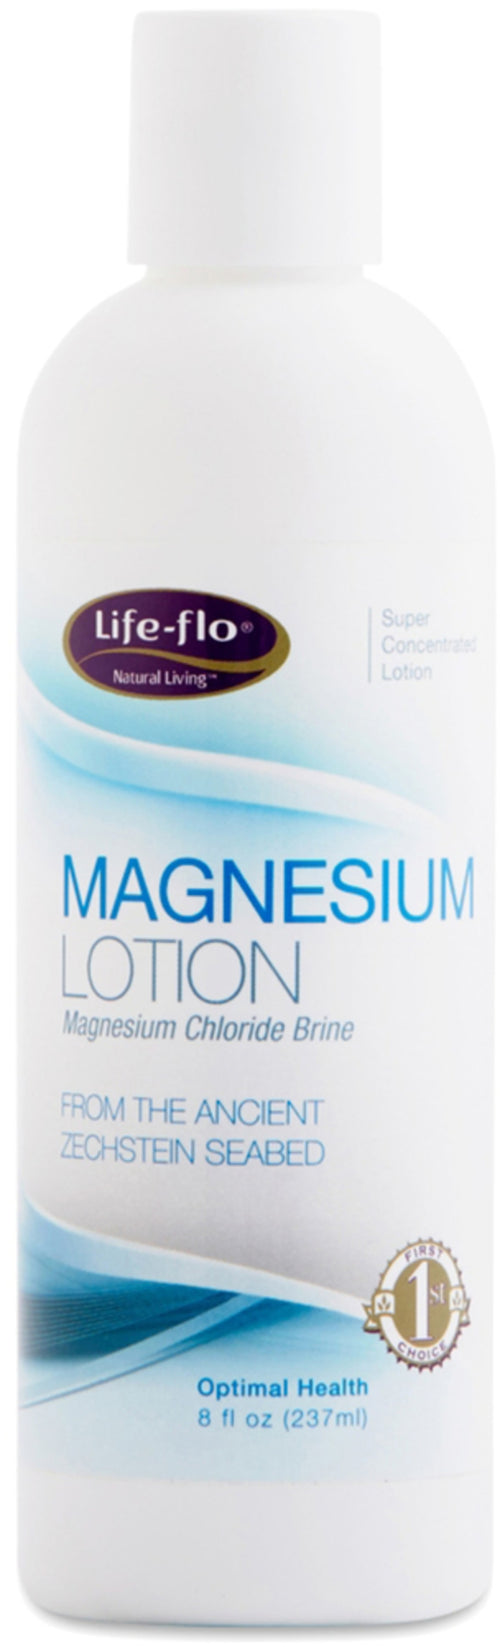 Magnesium Lotion 8 oz Flaska      